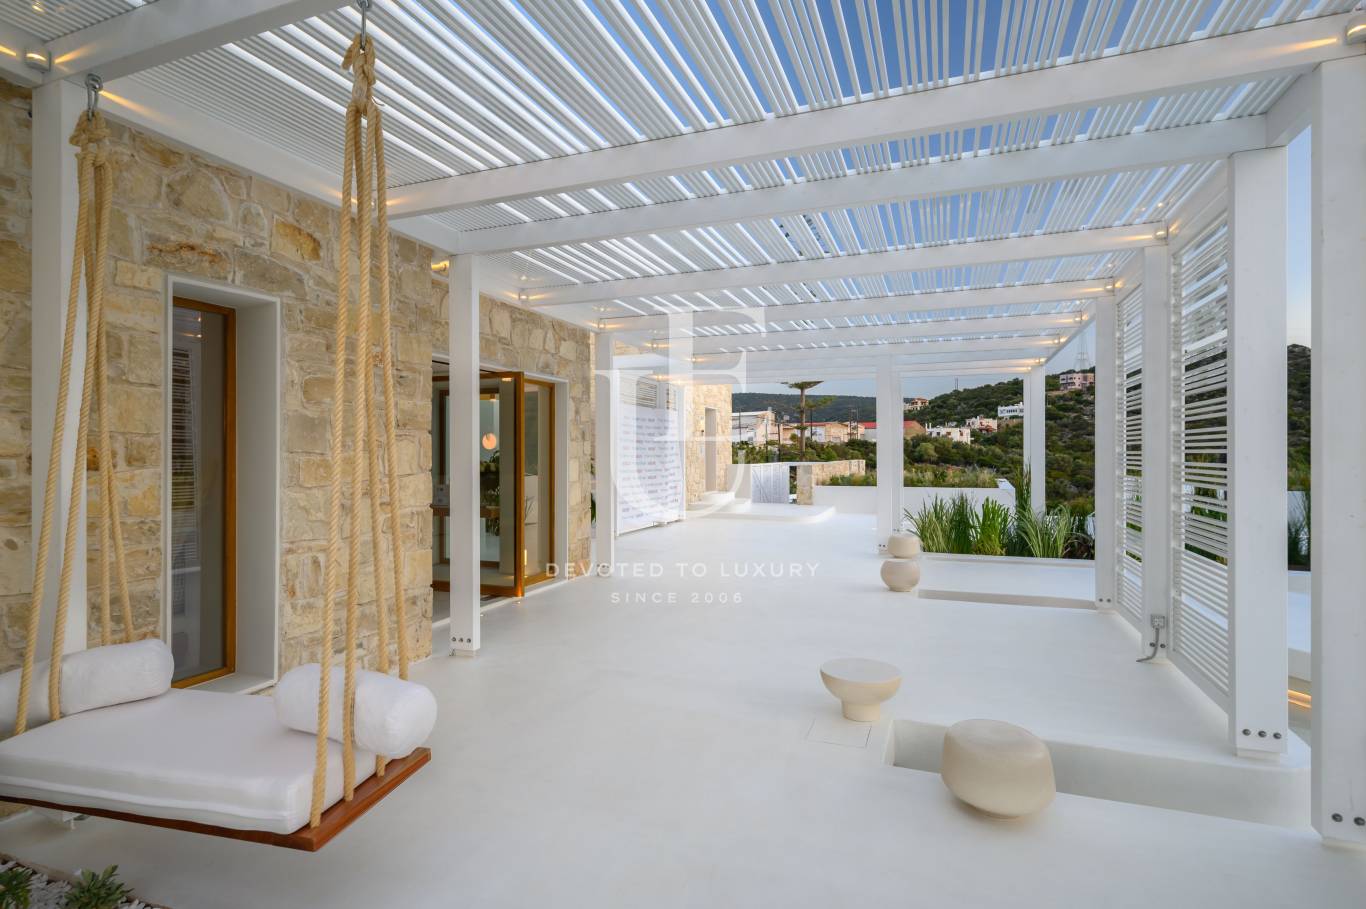 Хотел / Apartment house за продажба в остров Крит,  - код на имота: N21077 - image 14